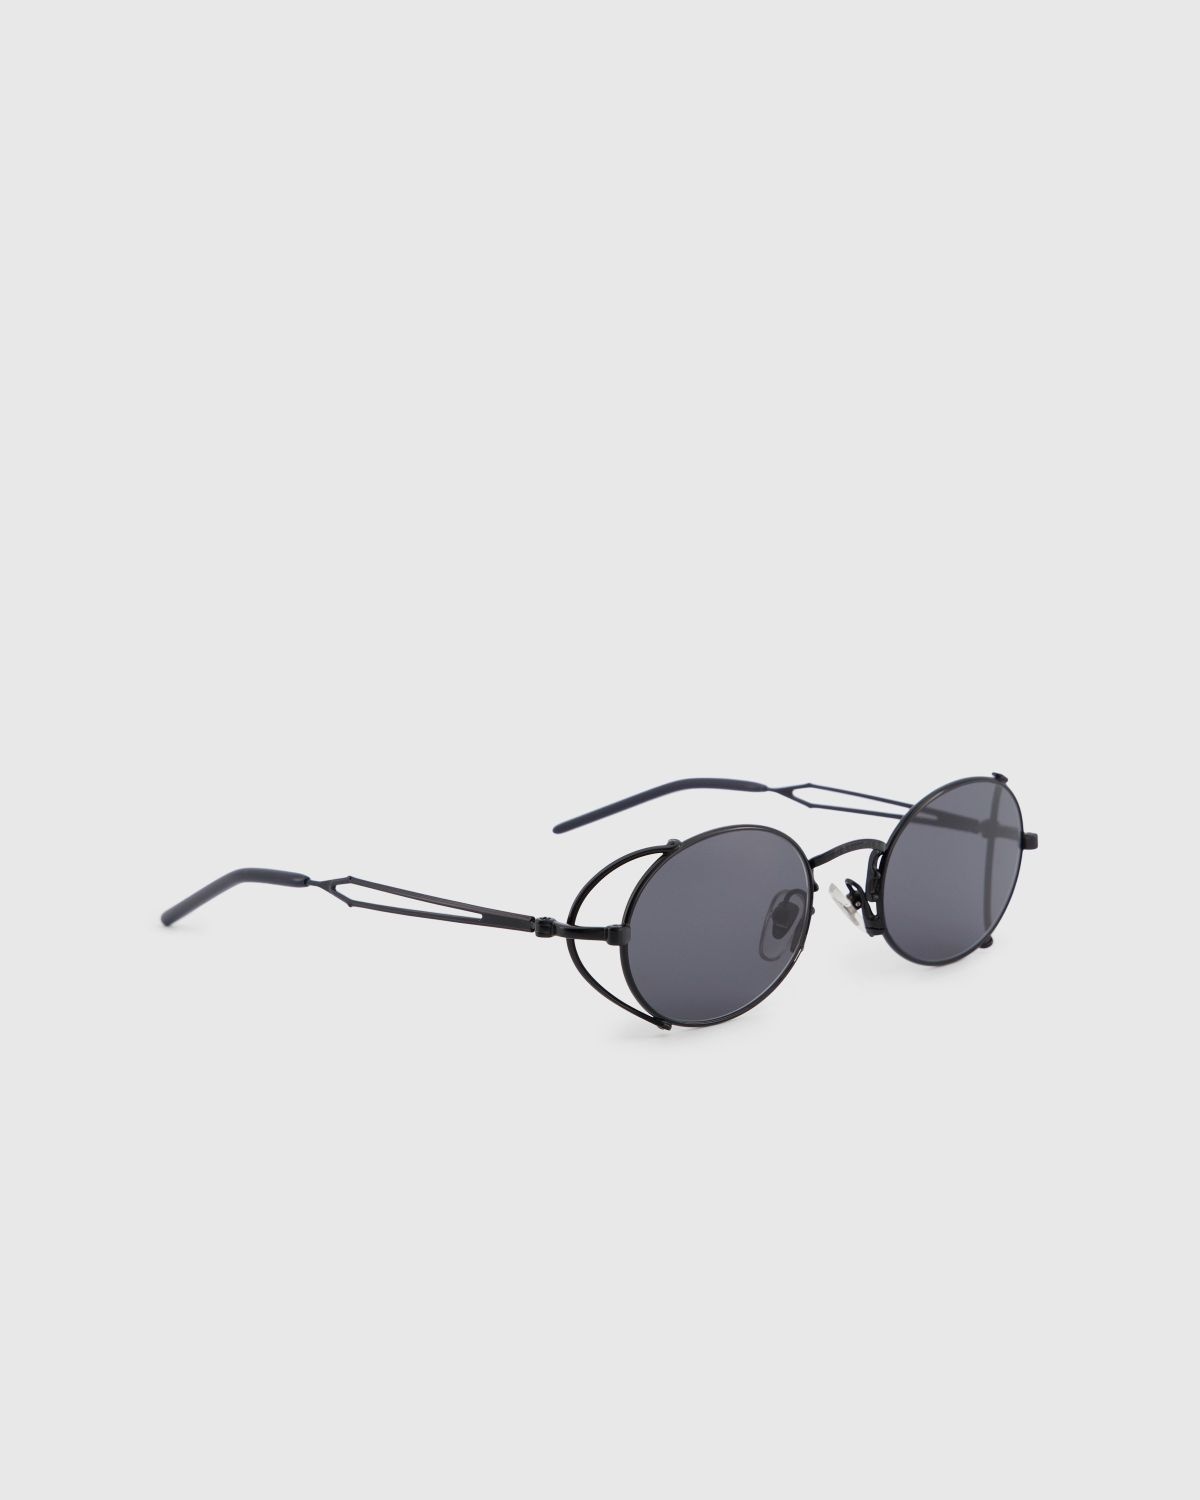 Jean Paul Gaultier x Burna Boy – 55-3175 Arceau Sunglasses Black - 2